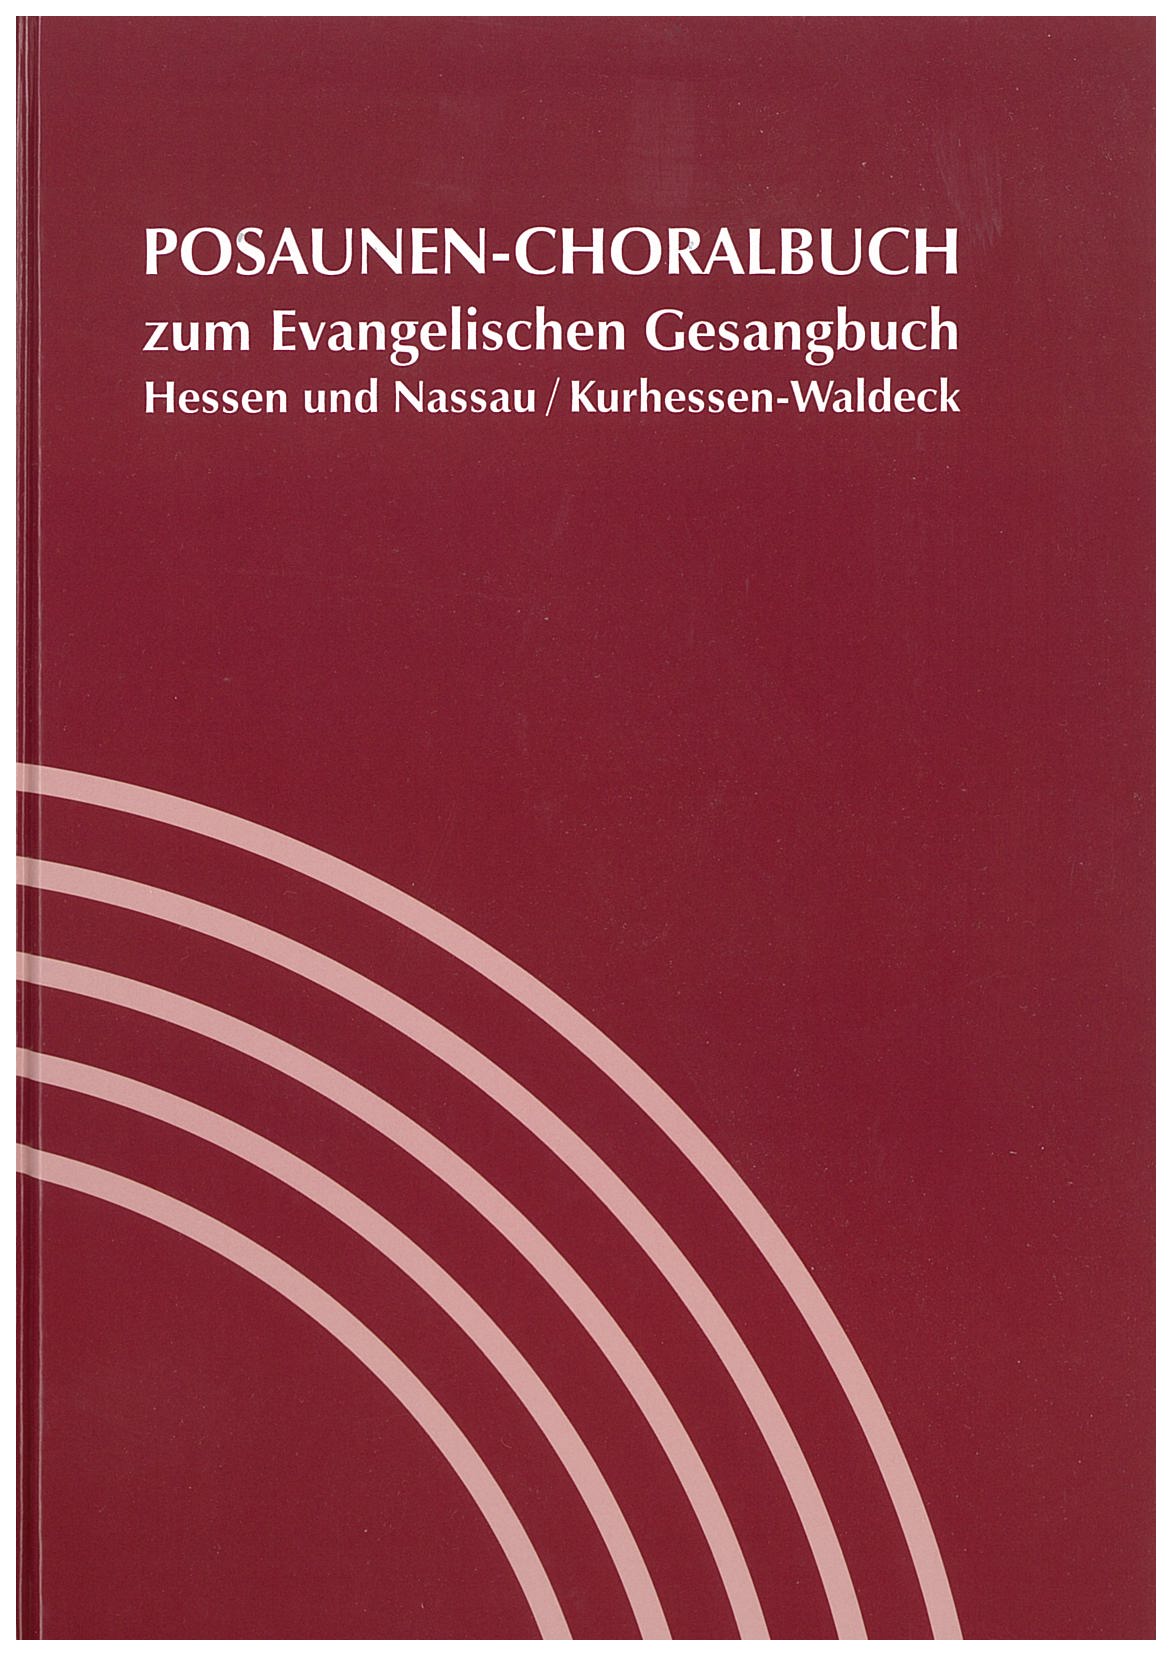 Posaunenchoralbuch Hessen